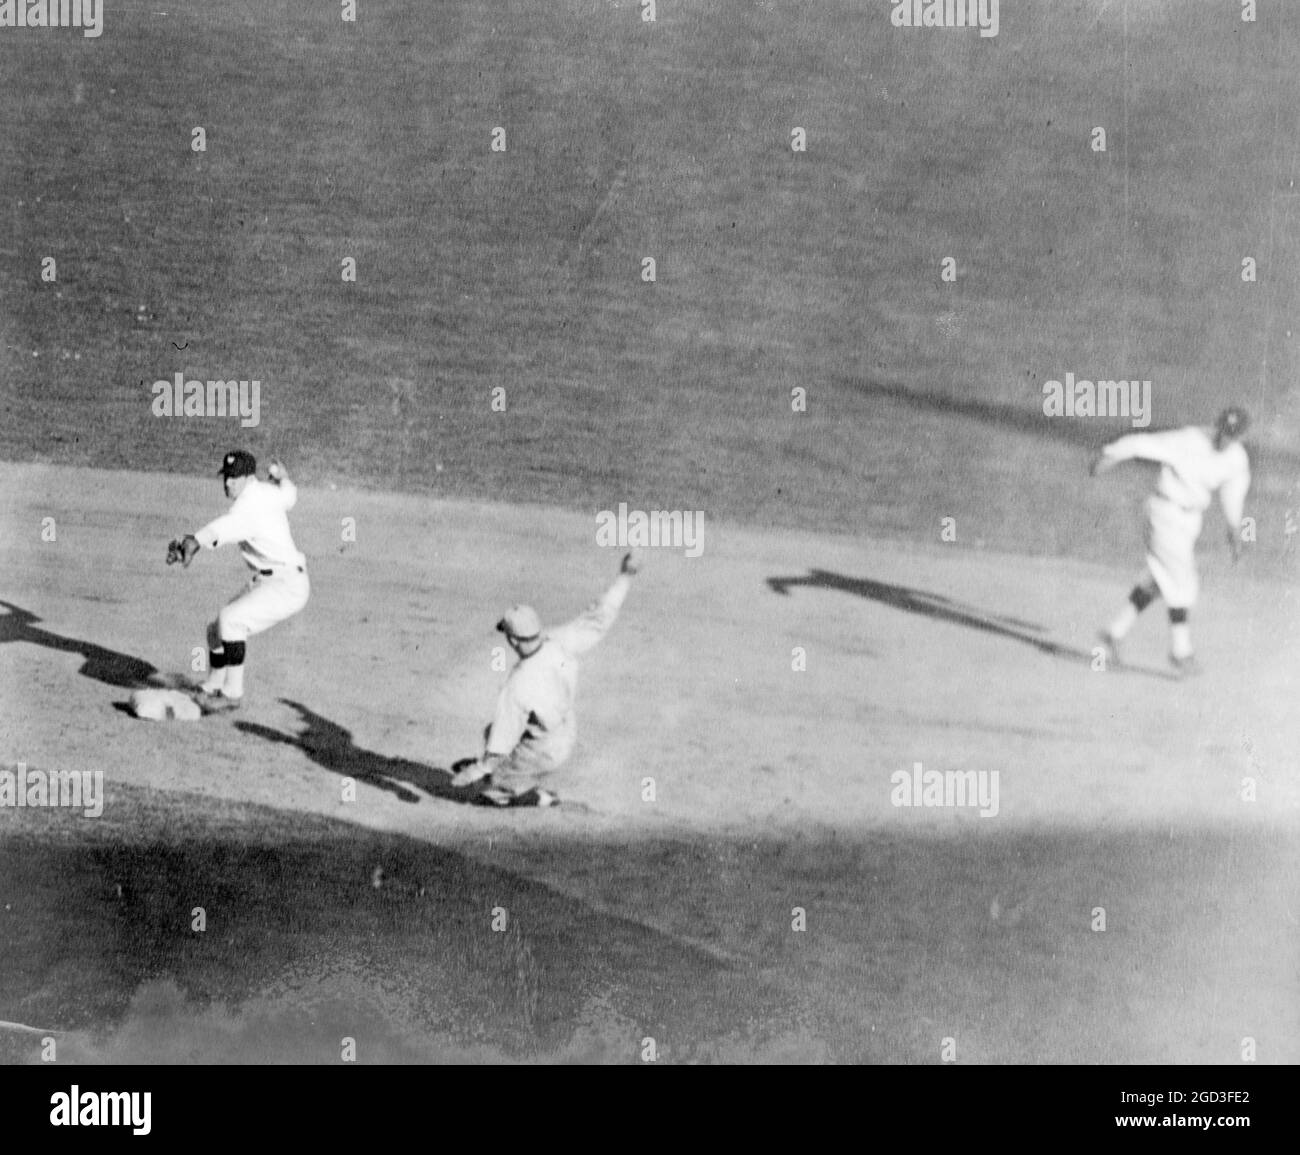 Washington Fielder markiert die zweite Basis vor dem gleitenden Basisläufer und dreht sich um den Ball auf die erste Basis zu werfen, um ein Doppelspiel während des Baseballspiels ca. zwischen 1910 und 1930 zu absolvieren Stockfoto